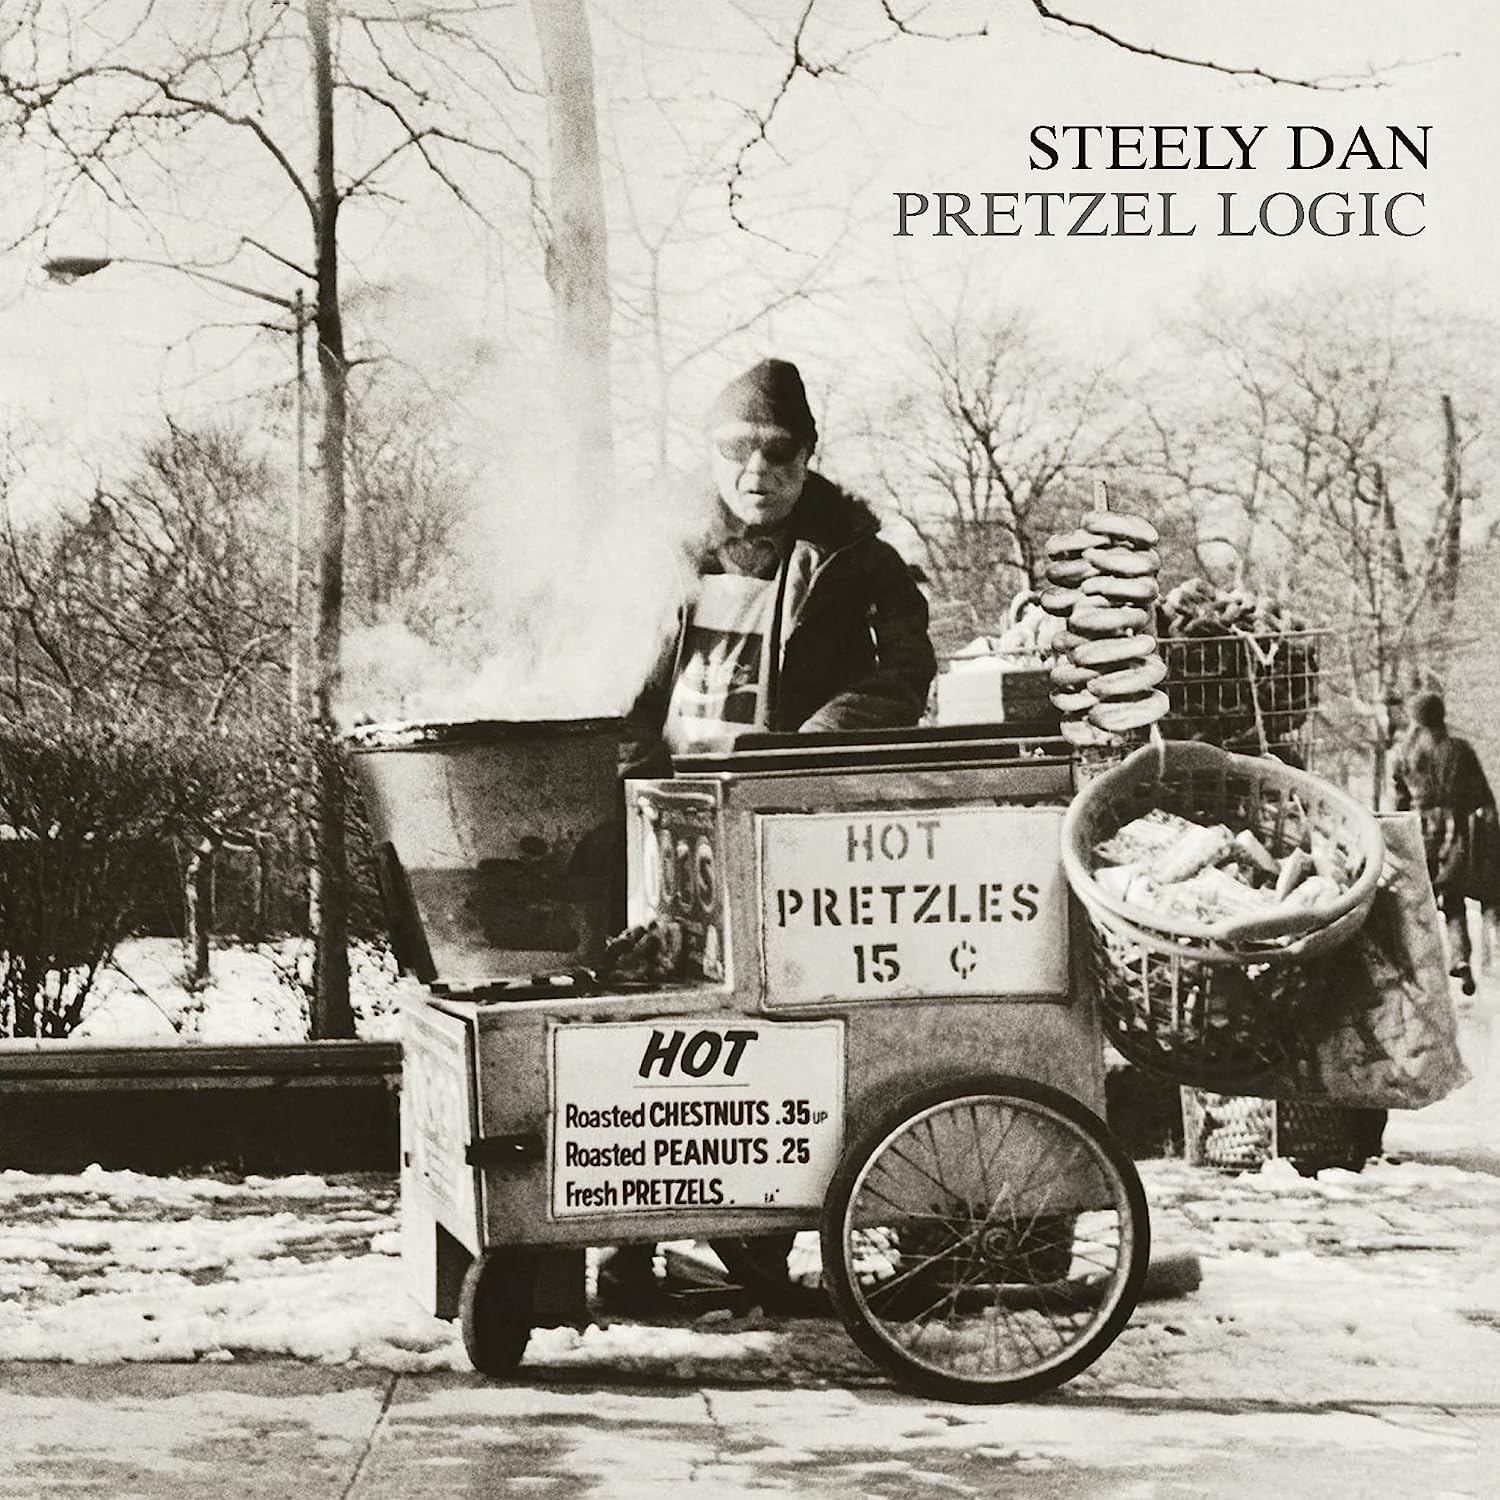 Steely Dan / Pretzel Logic vinyl reissue